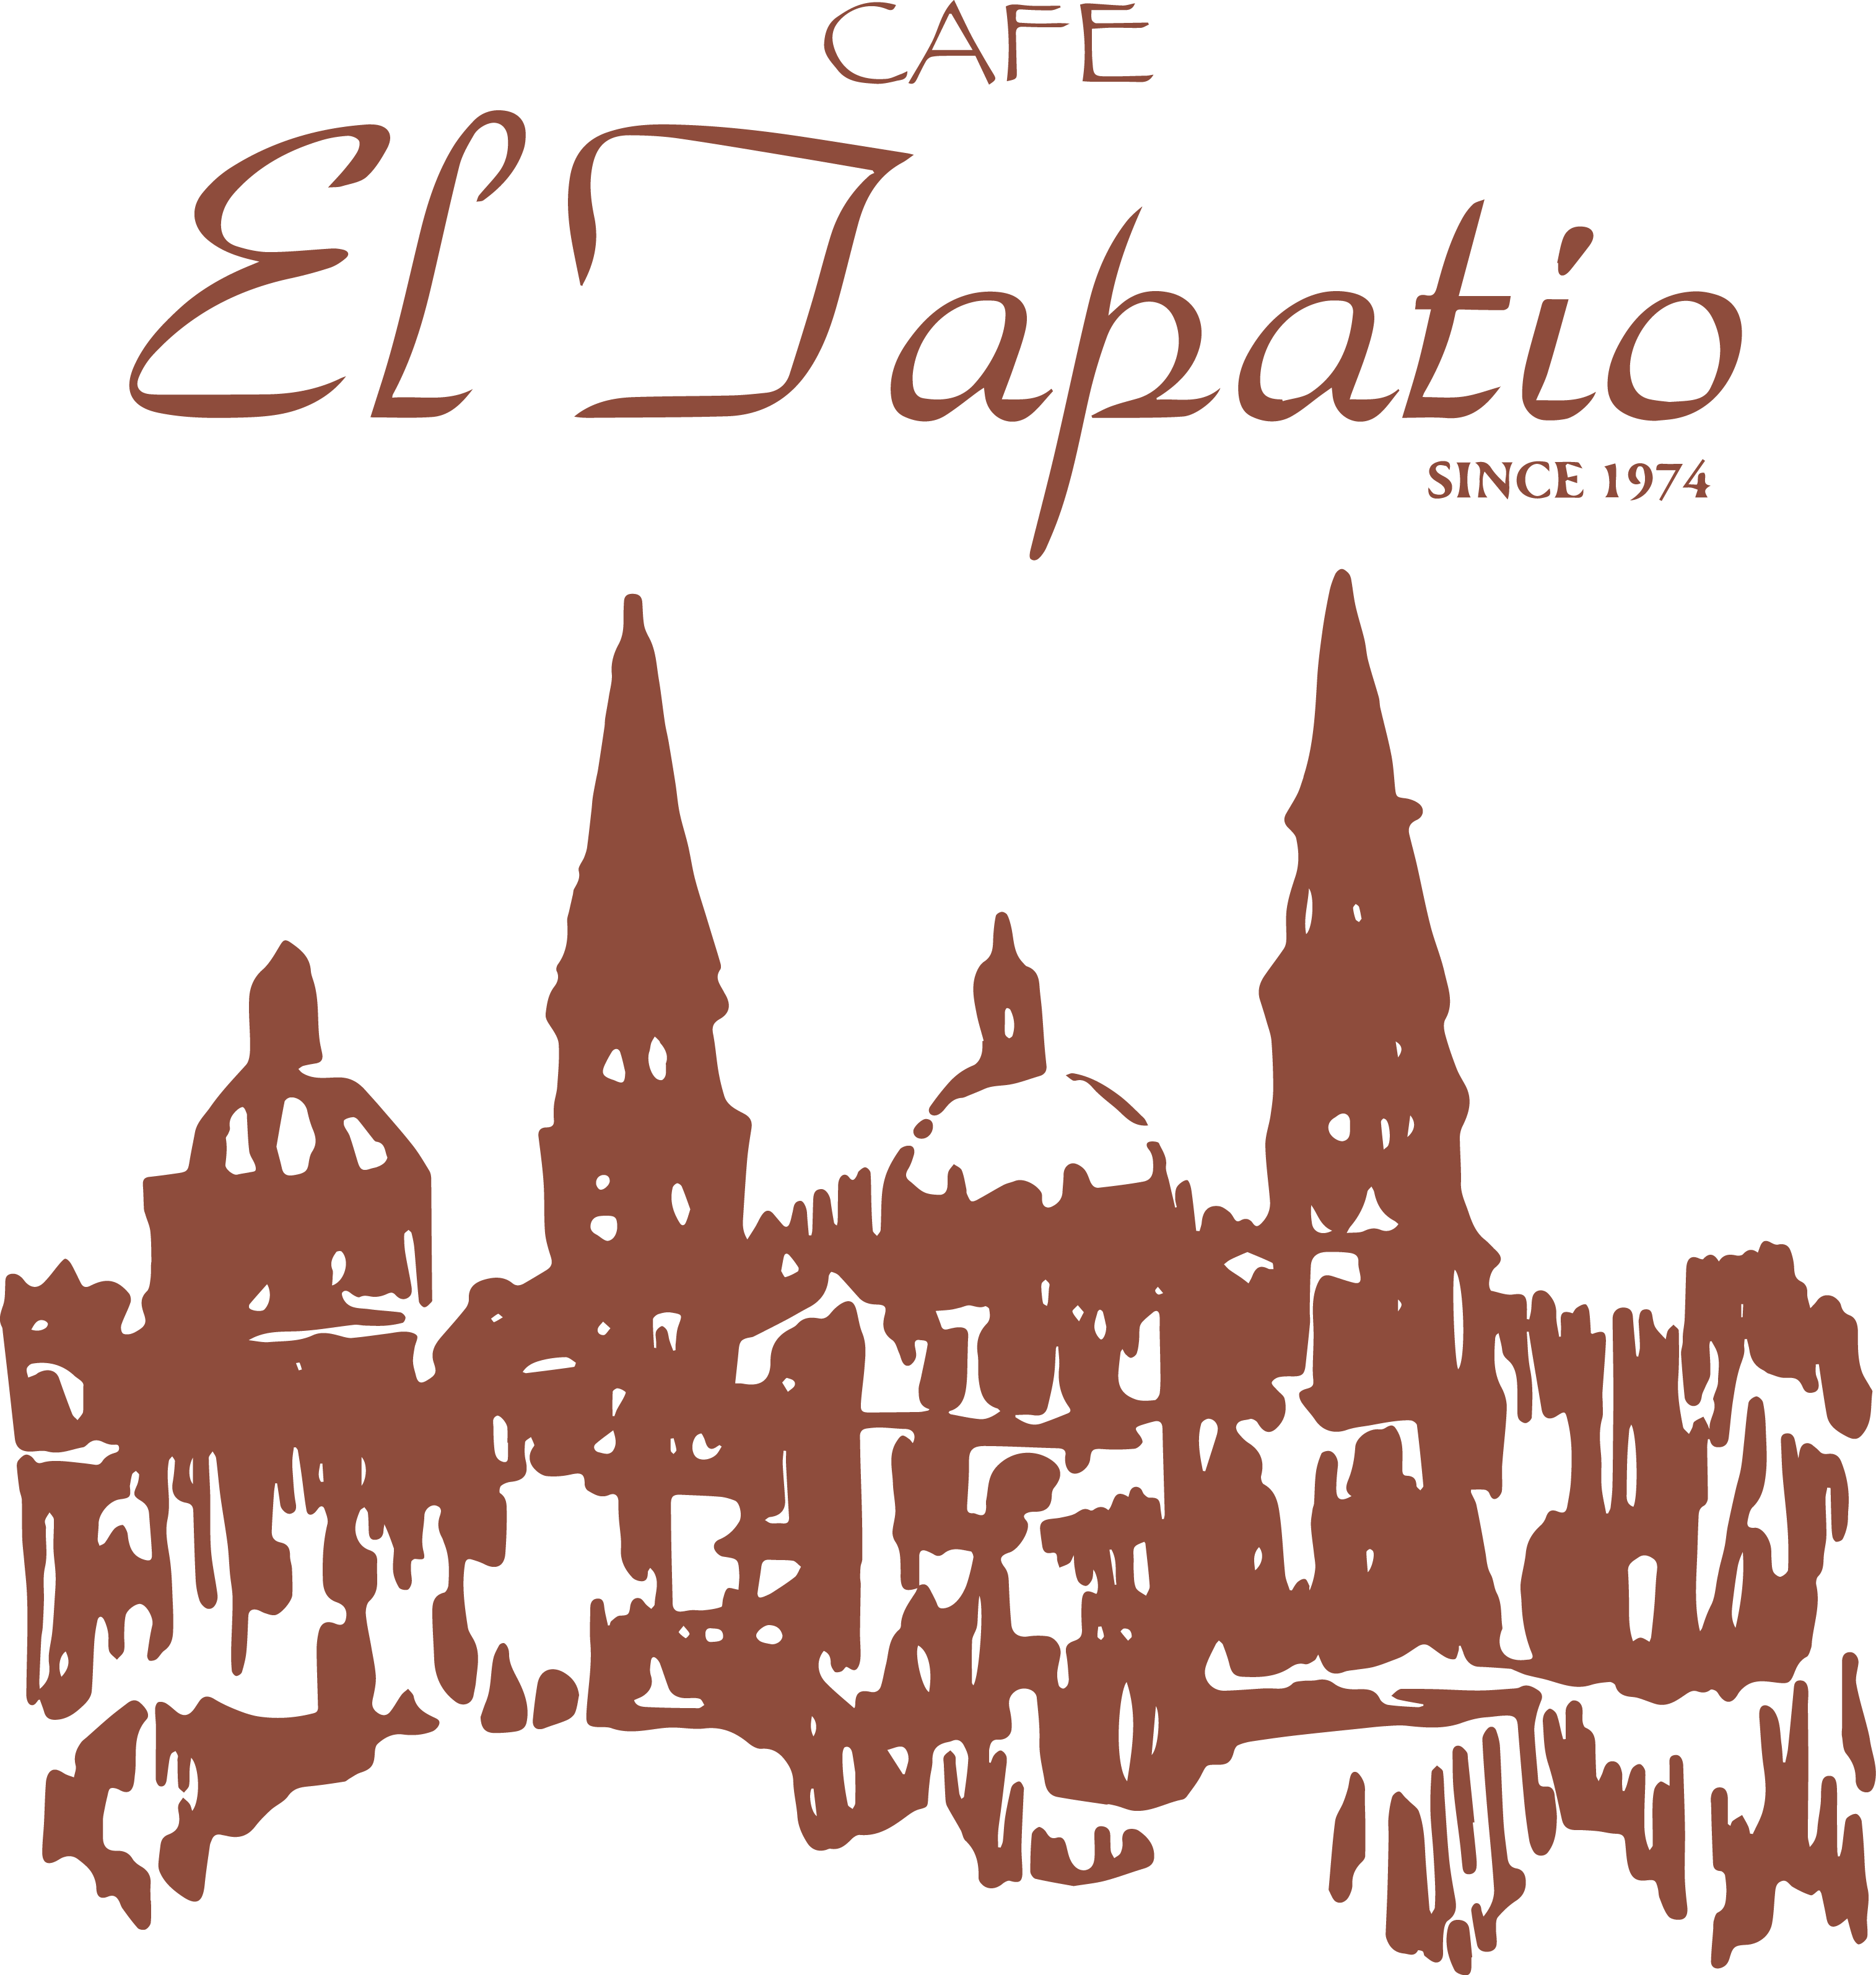 Tapatio Logo - Cafe El Tapatio